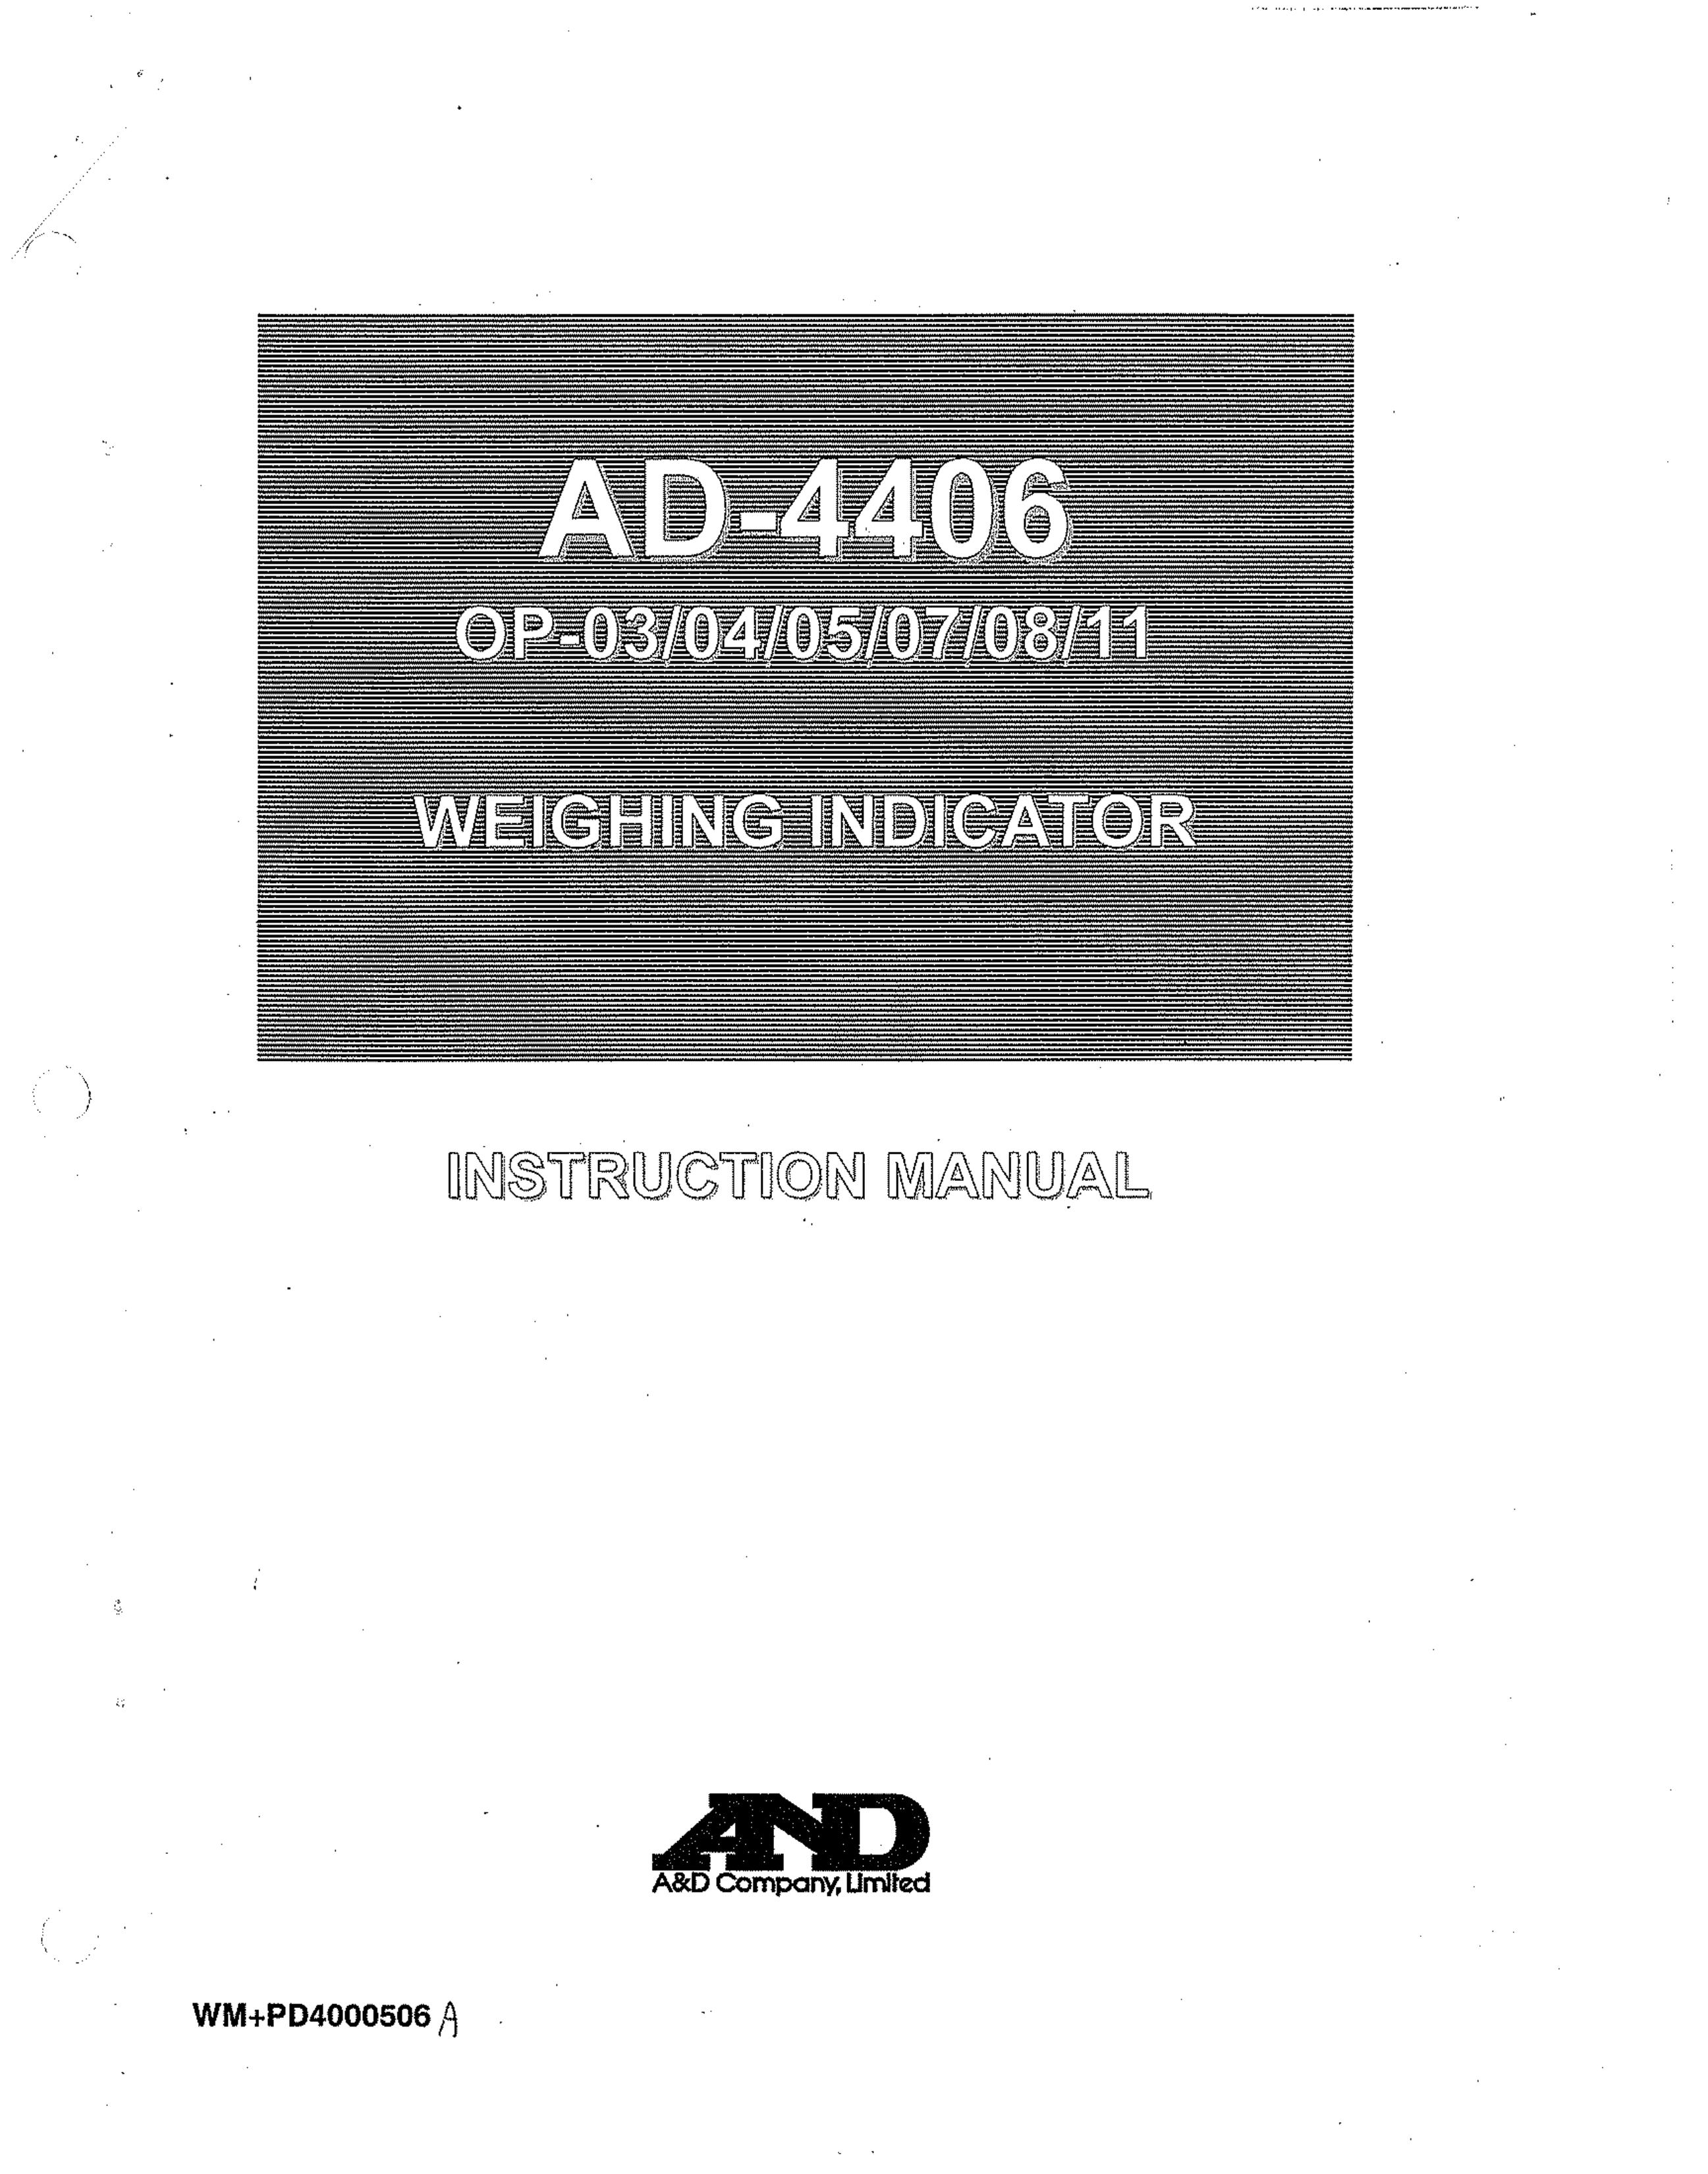 A&D AD-4406 SONAR User Manual